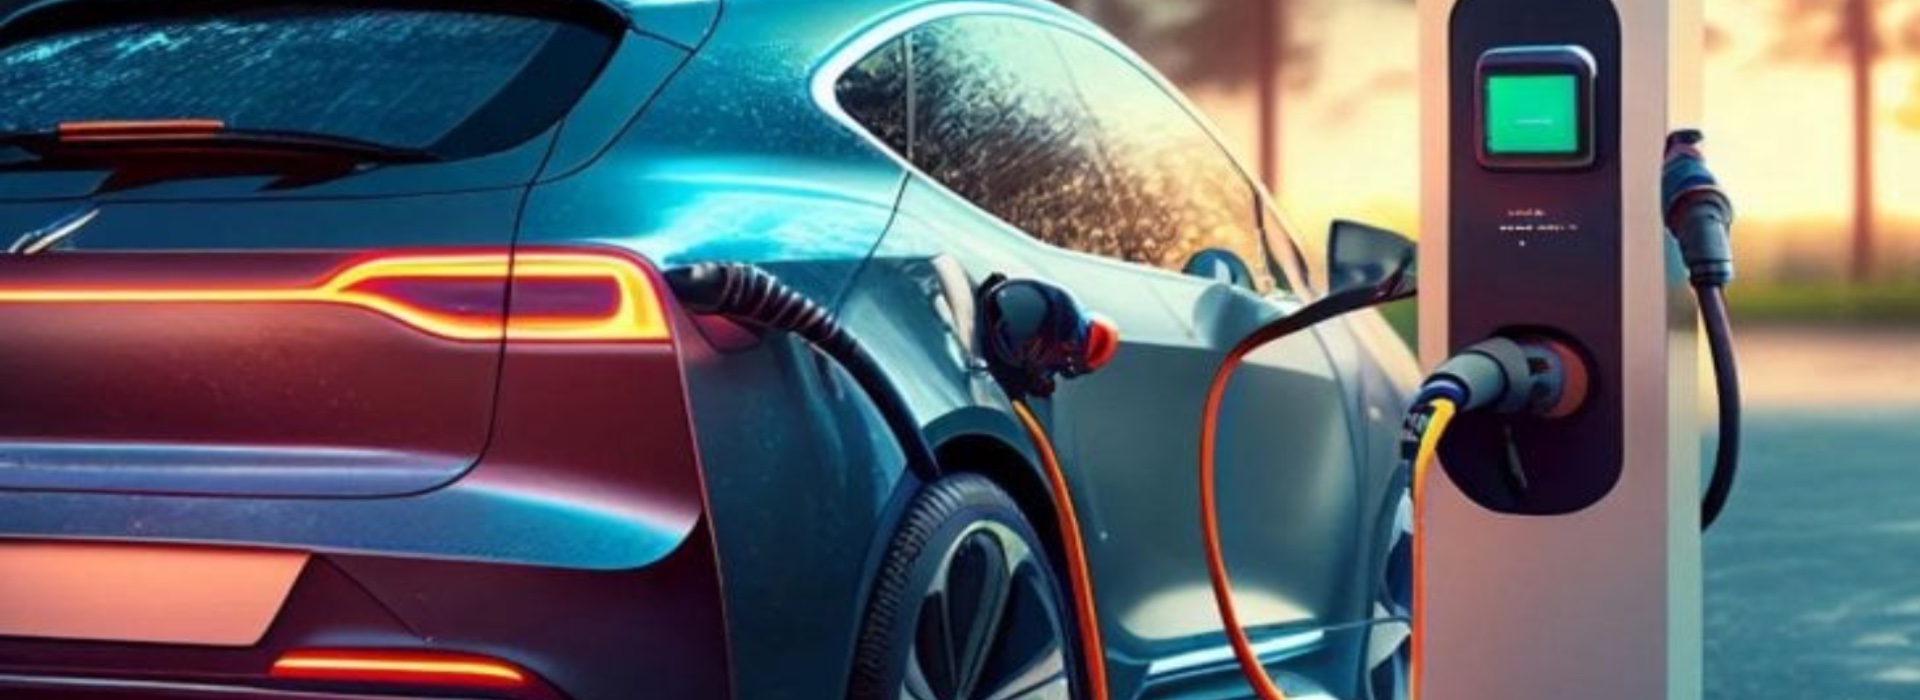 Auto elettriche: scopriamo i vantaggi e i limiti delle electric cars. Sono davvero il futuro?